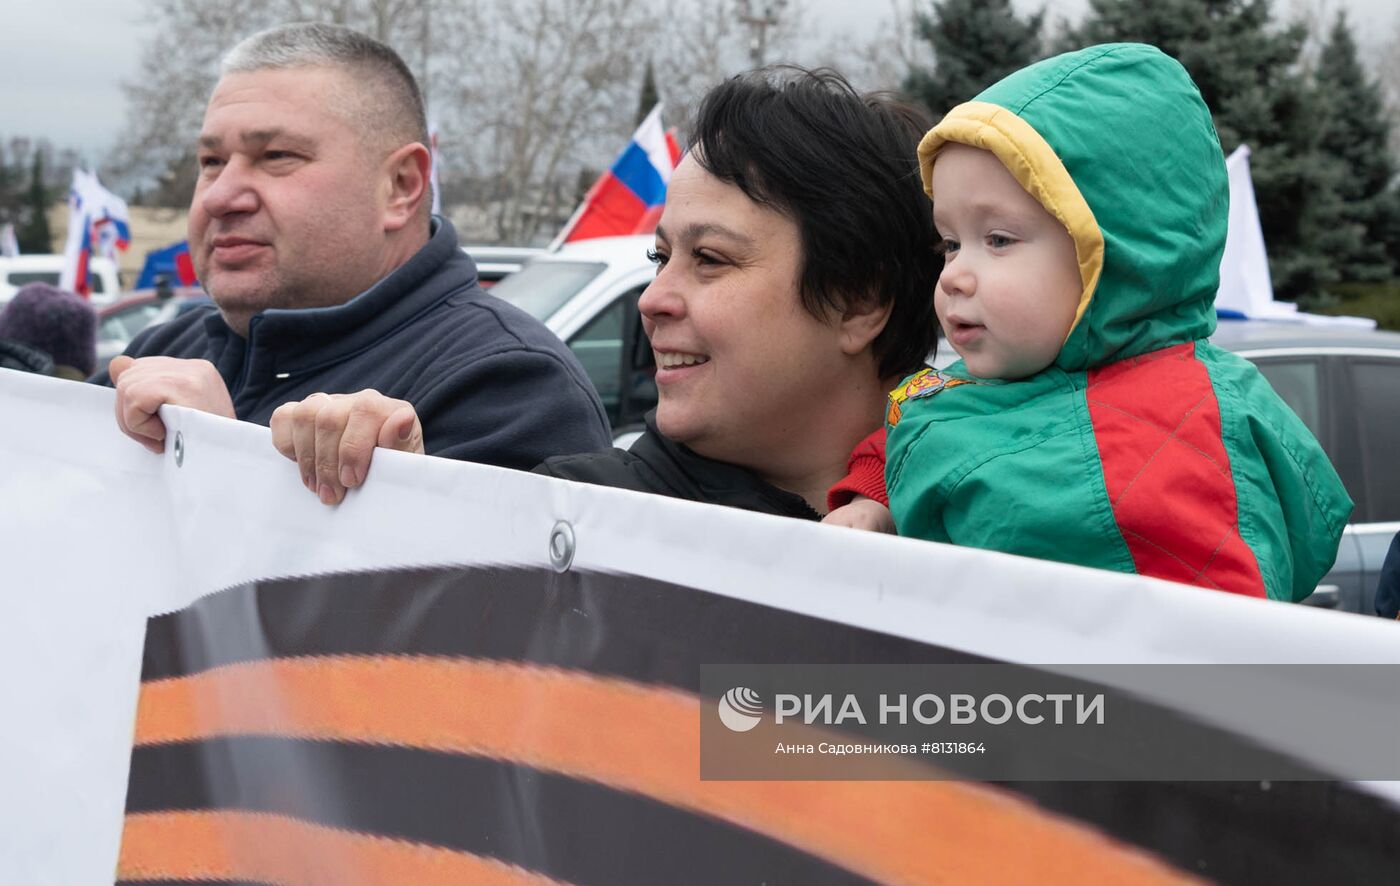 Автопробег в Севастополе в поддержку специальной военной операции на Украине